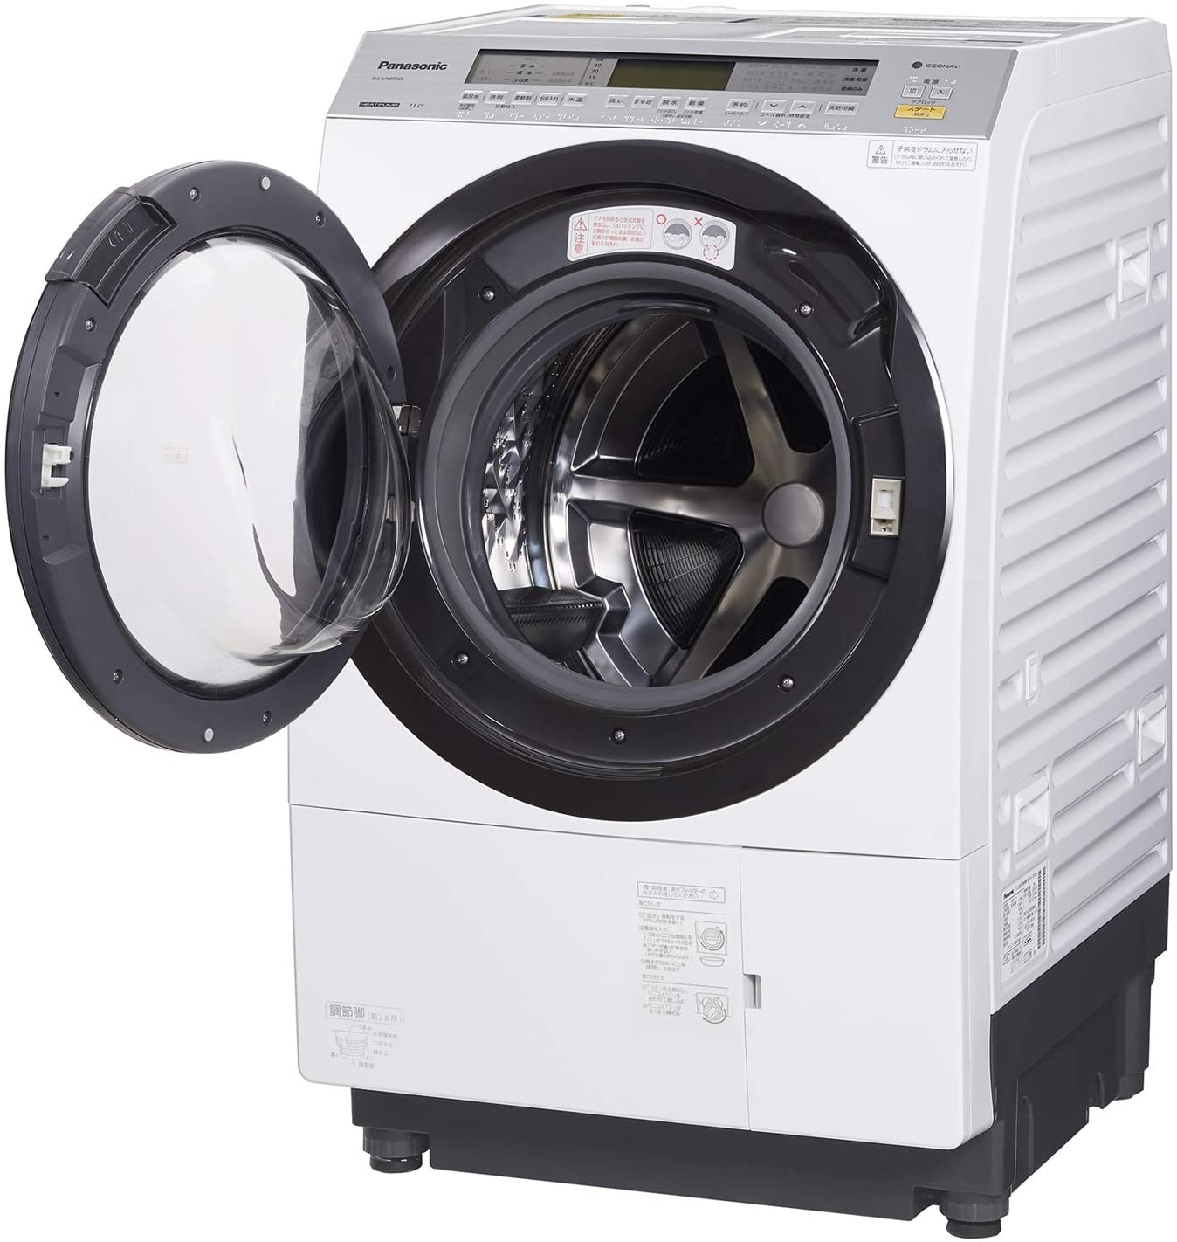 Panasonic(パナソニック) ななめドラム洗濯乾燥機 NA-VX8900Lの商品画像2 